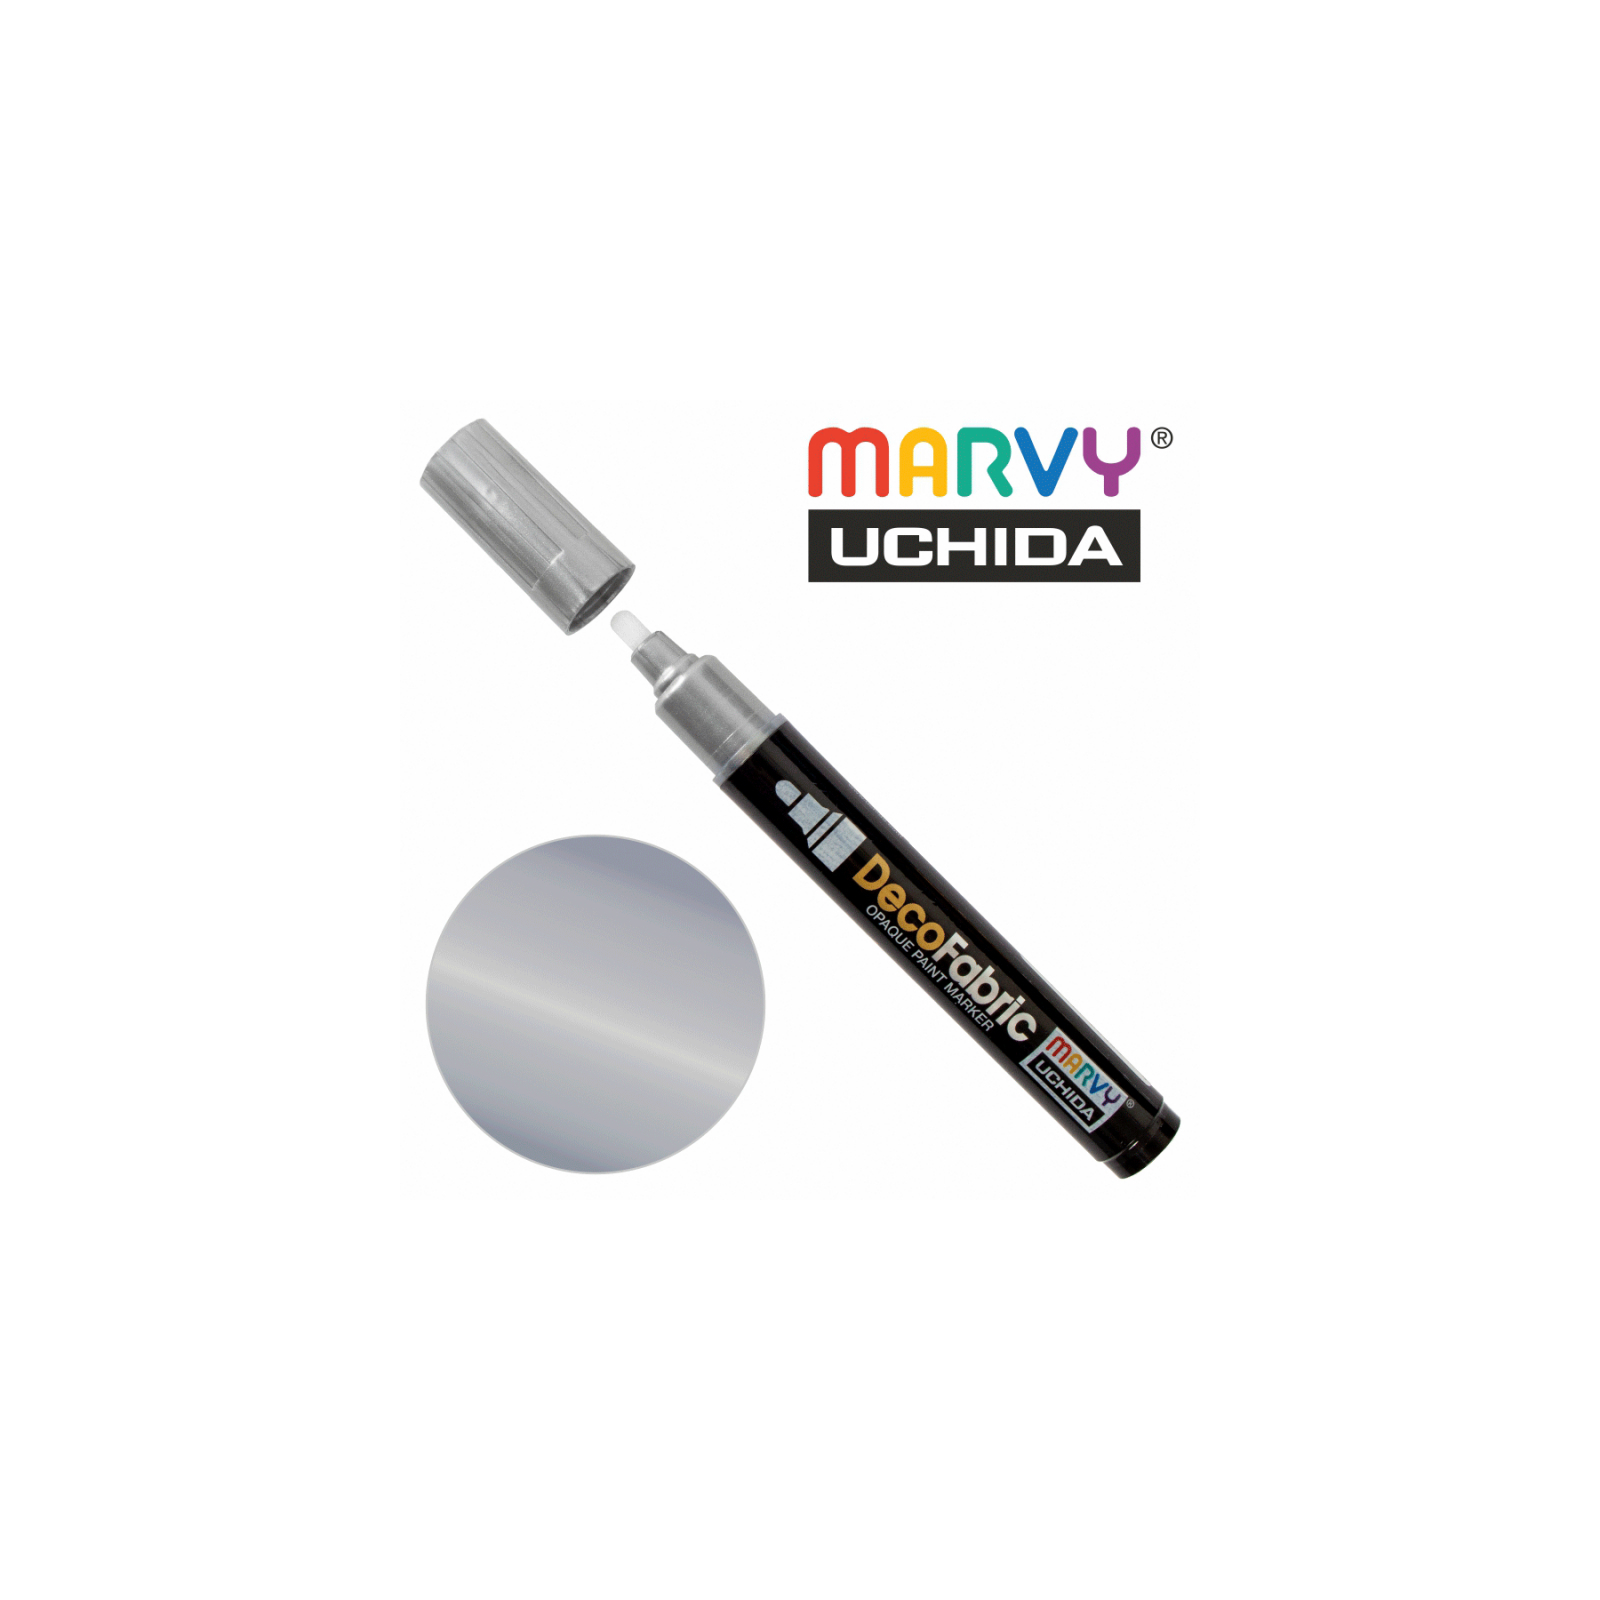 Художественный маркер Marvy для росписи тканей, Серебро, односторонний, #223, DecoFabric (028617255804)